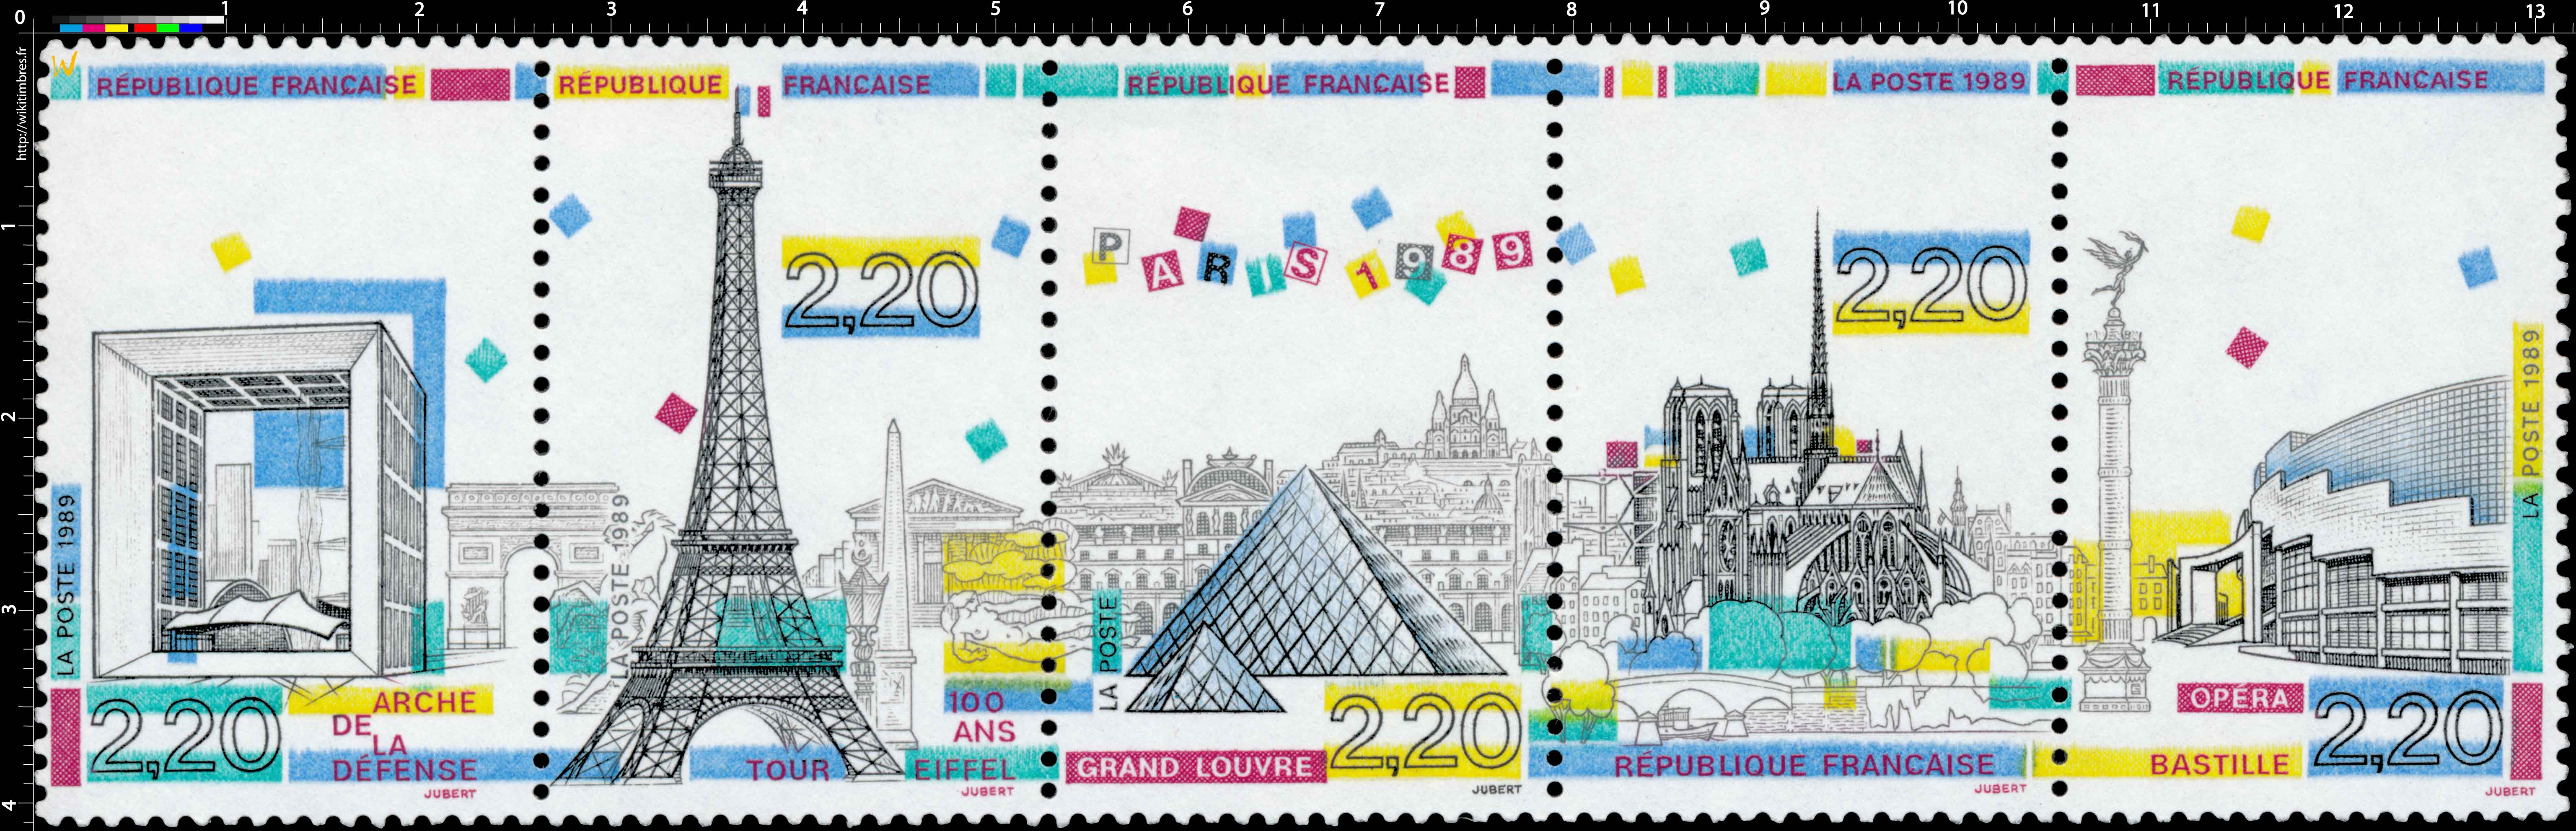 1989 PARIS